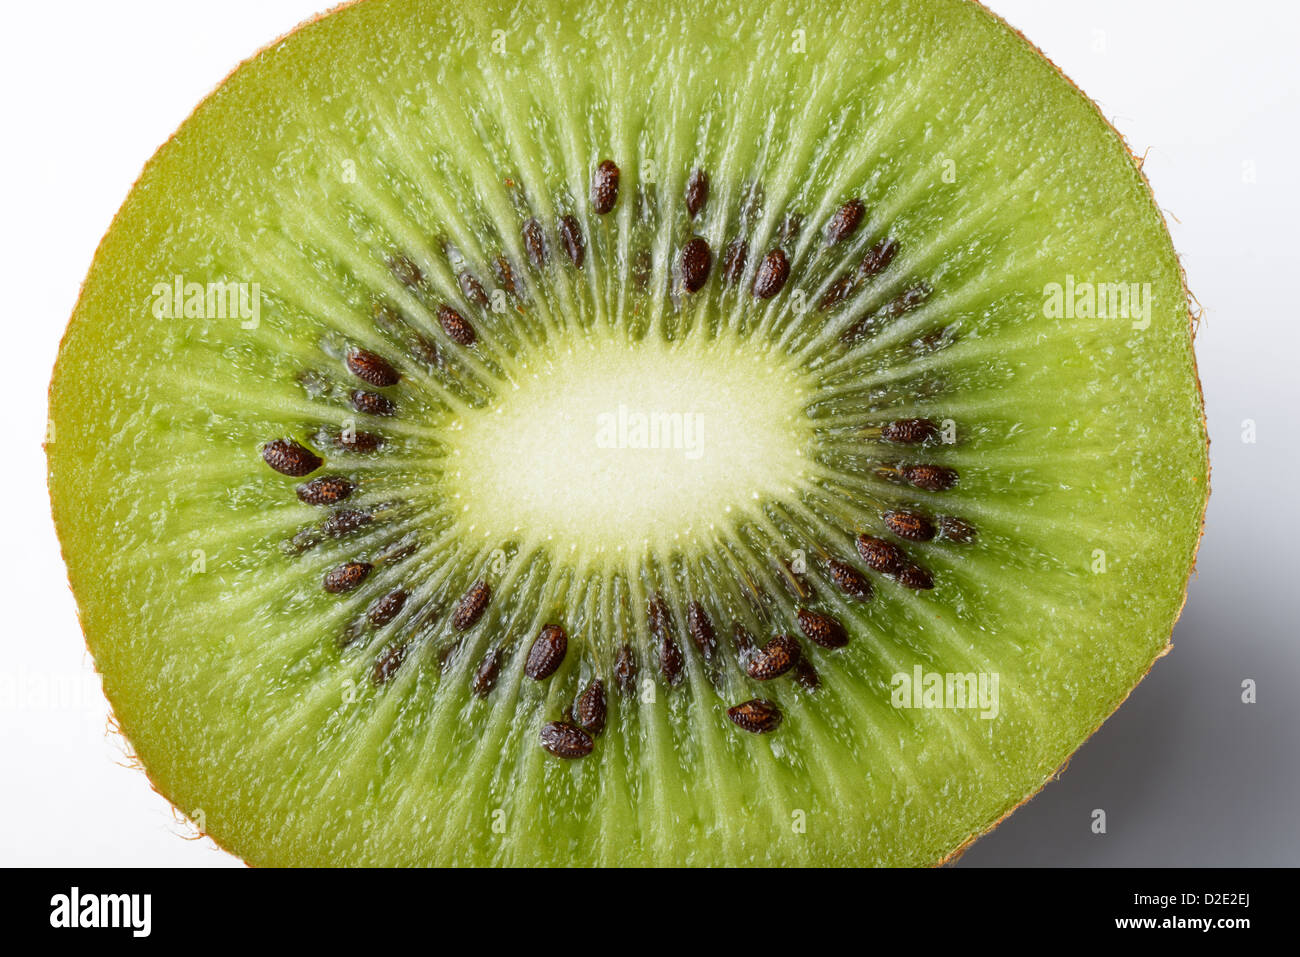 Kiwis, Schnitt Deliciosoa, in Scheiben geschnitten offen zeigt die Samen Stockfoto